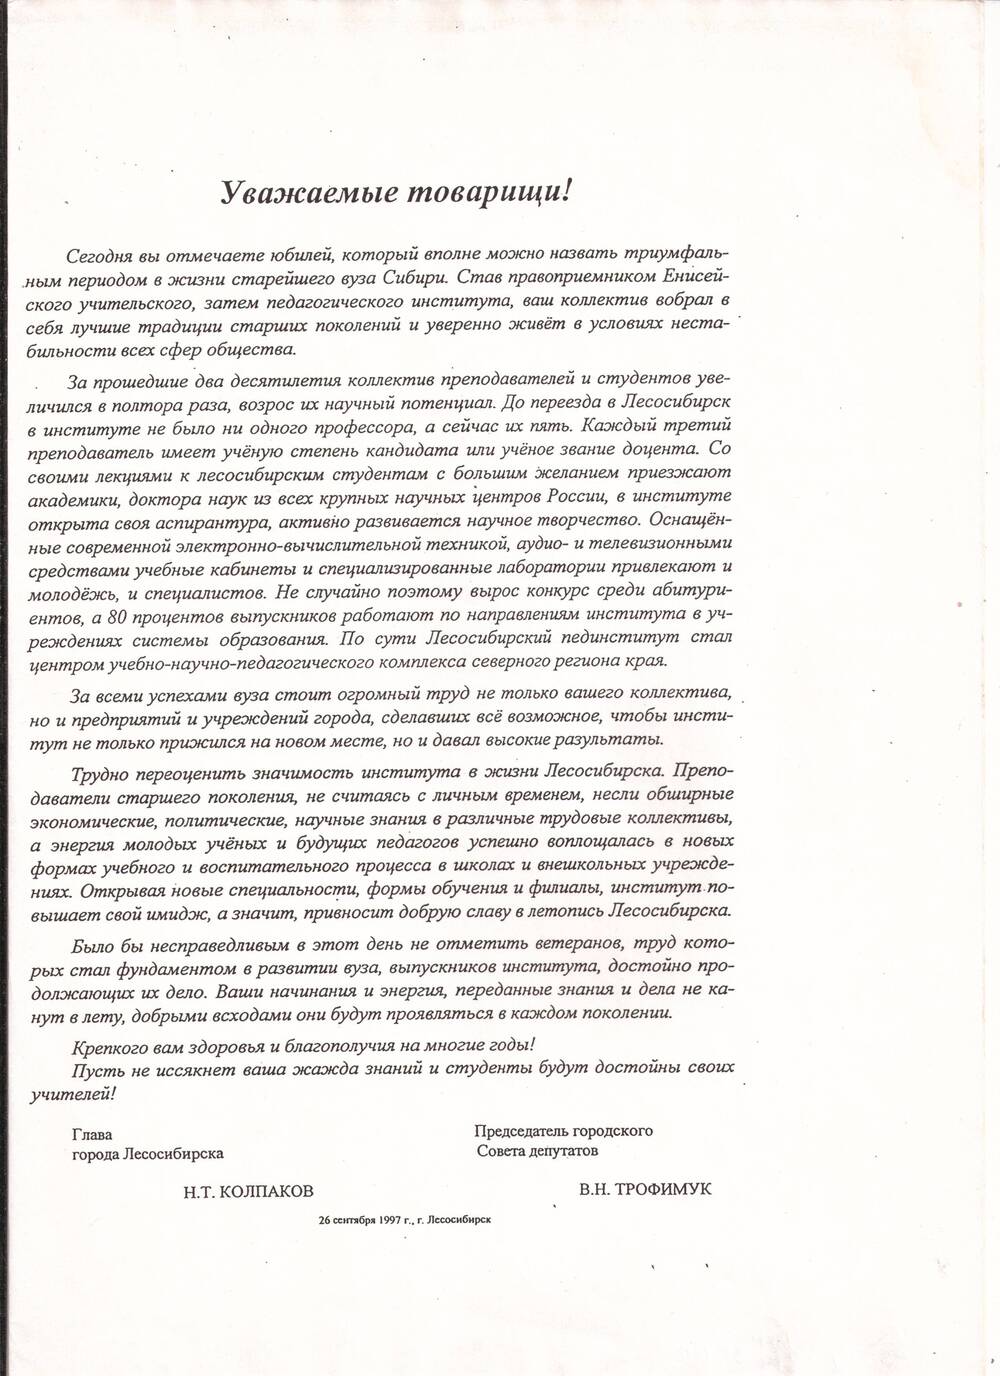 Письмо благодарственное для преподавателей и студентов ЛГПИ, 26 сентября 1997г.